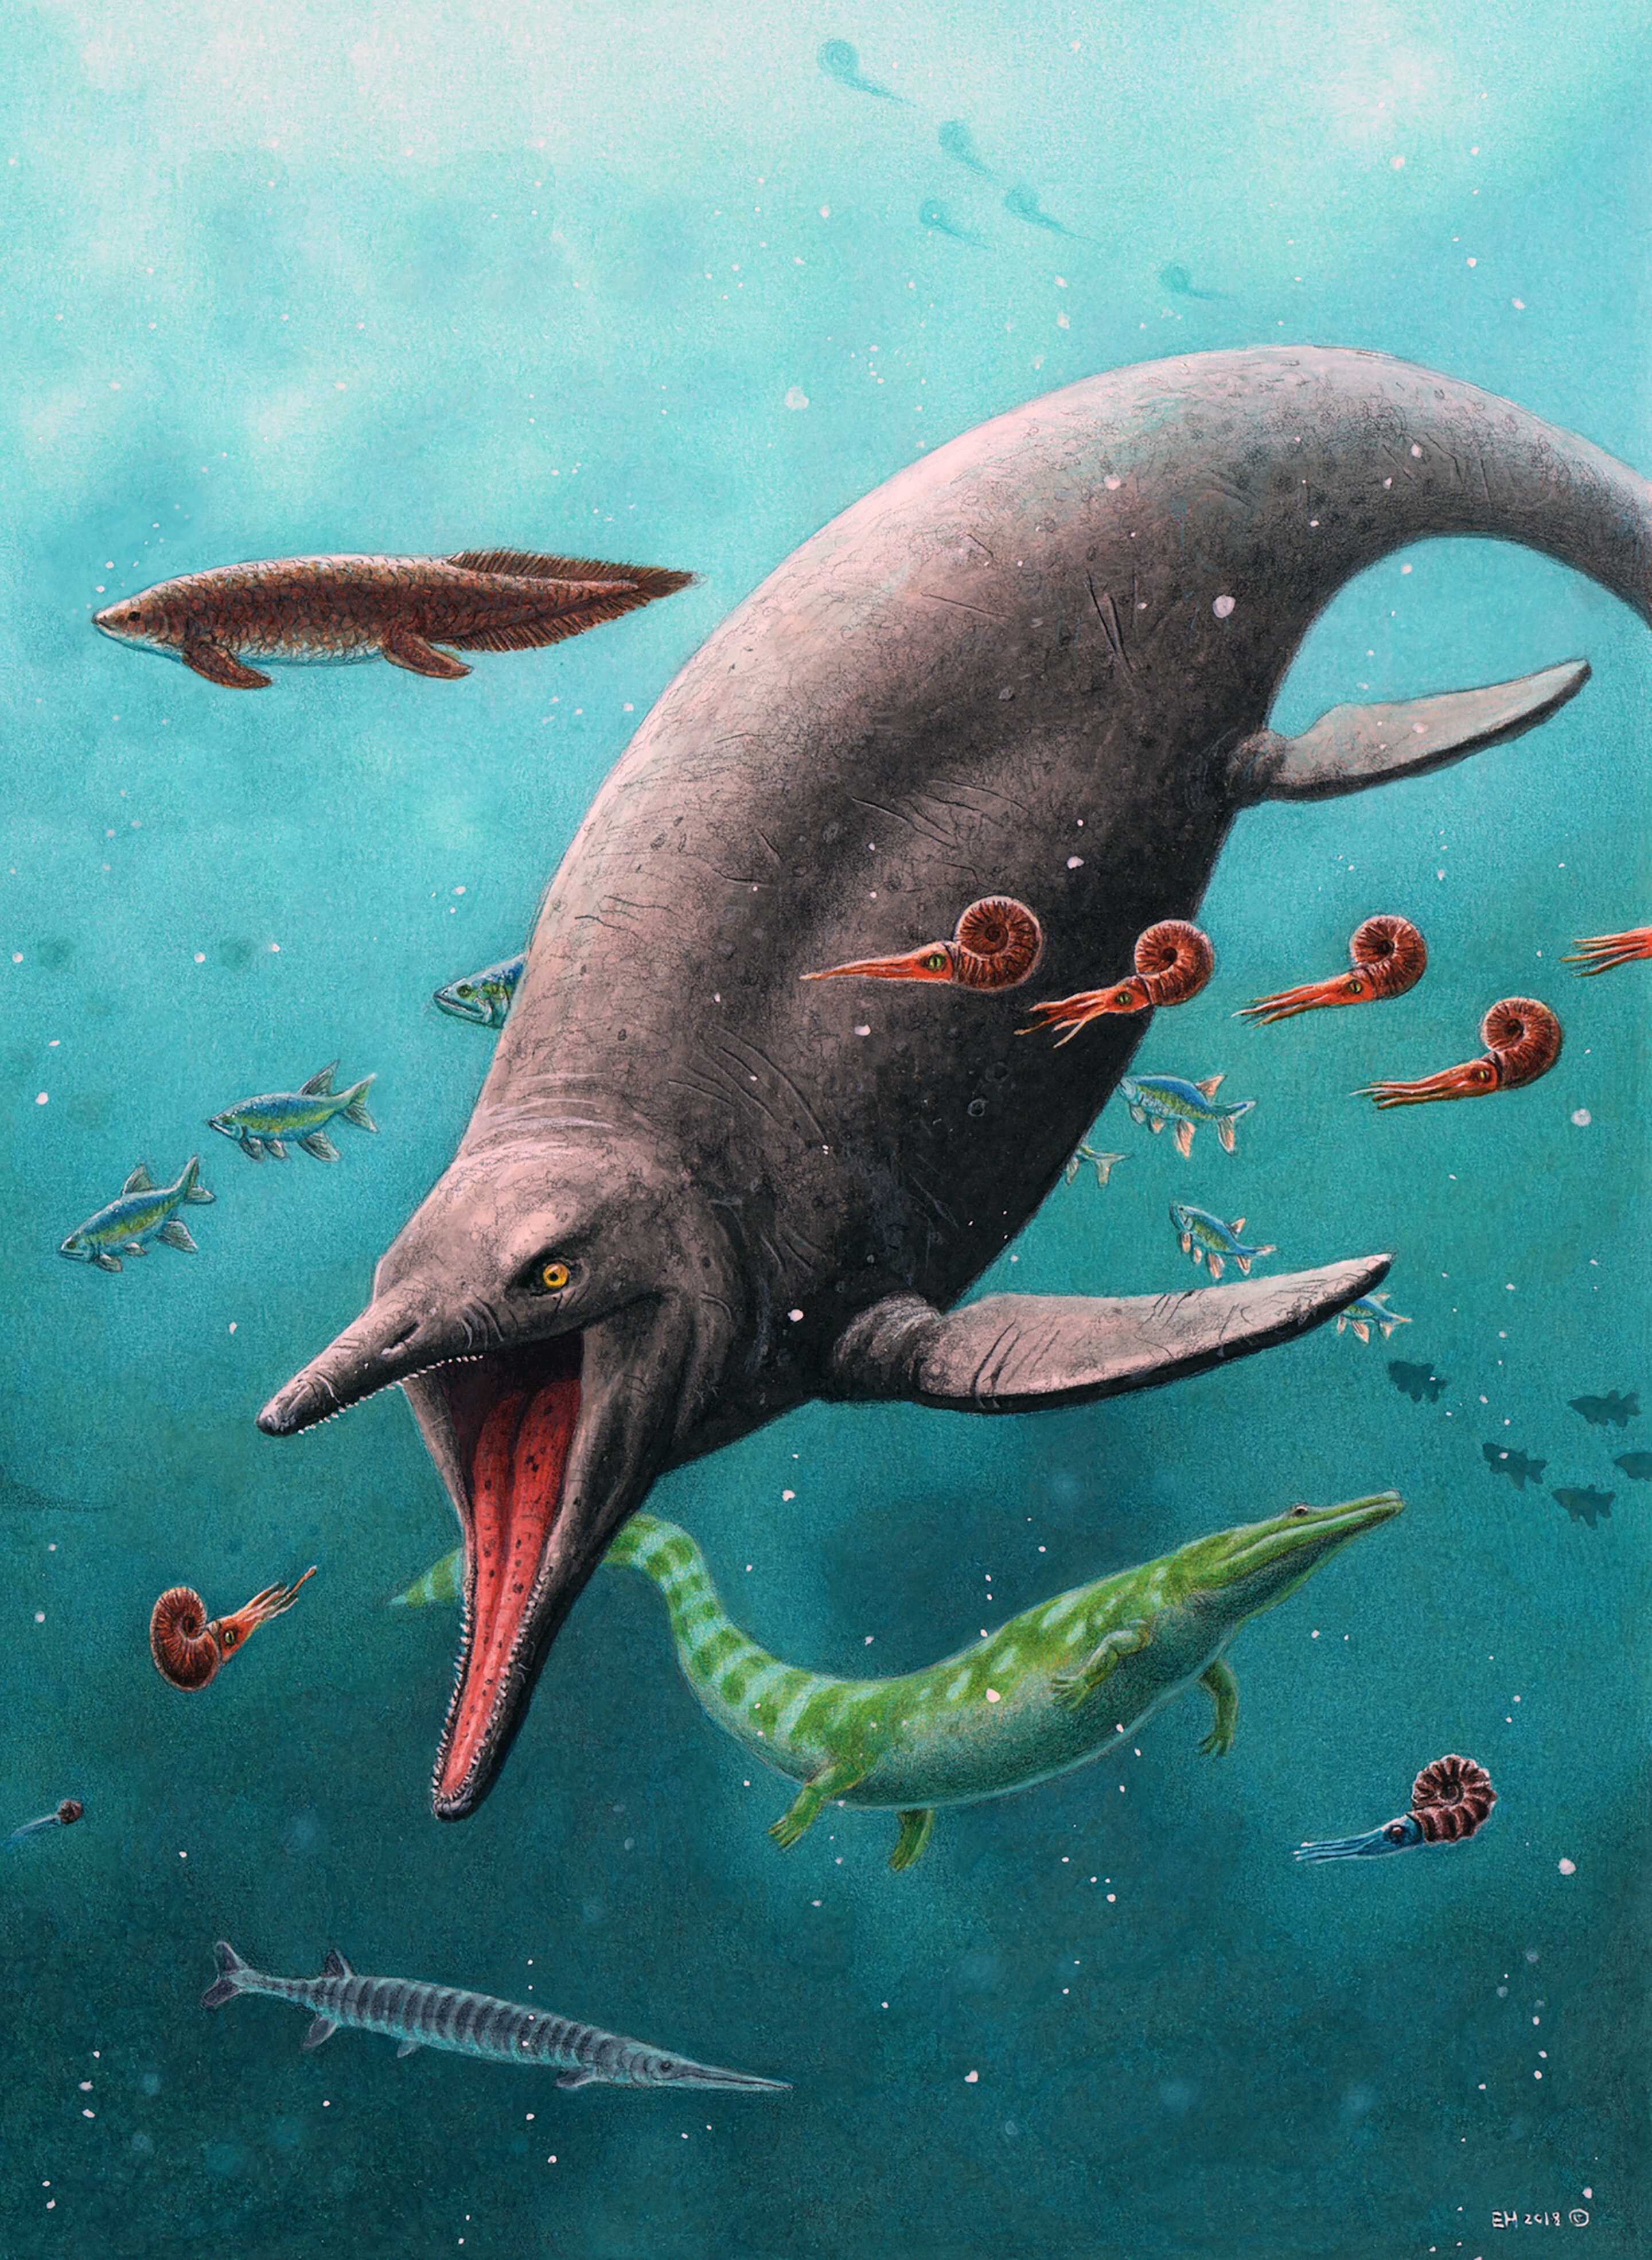 Najstarszy gad morski z epoki dinozaurów został znaleziony na arktycznej wyspie